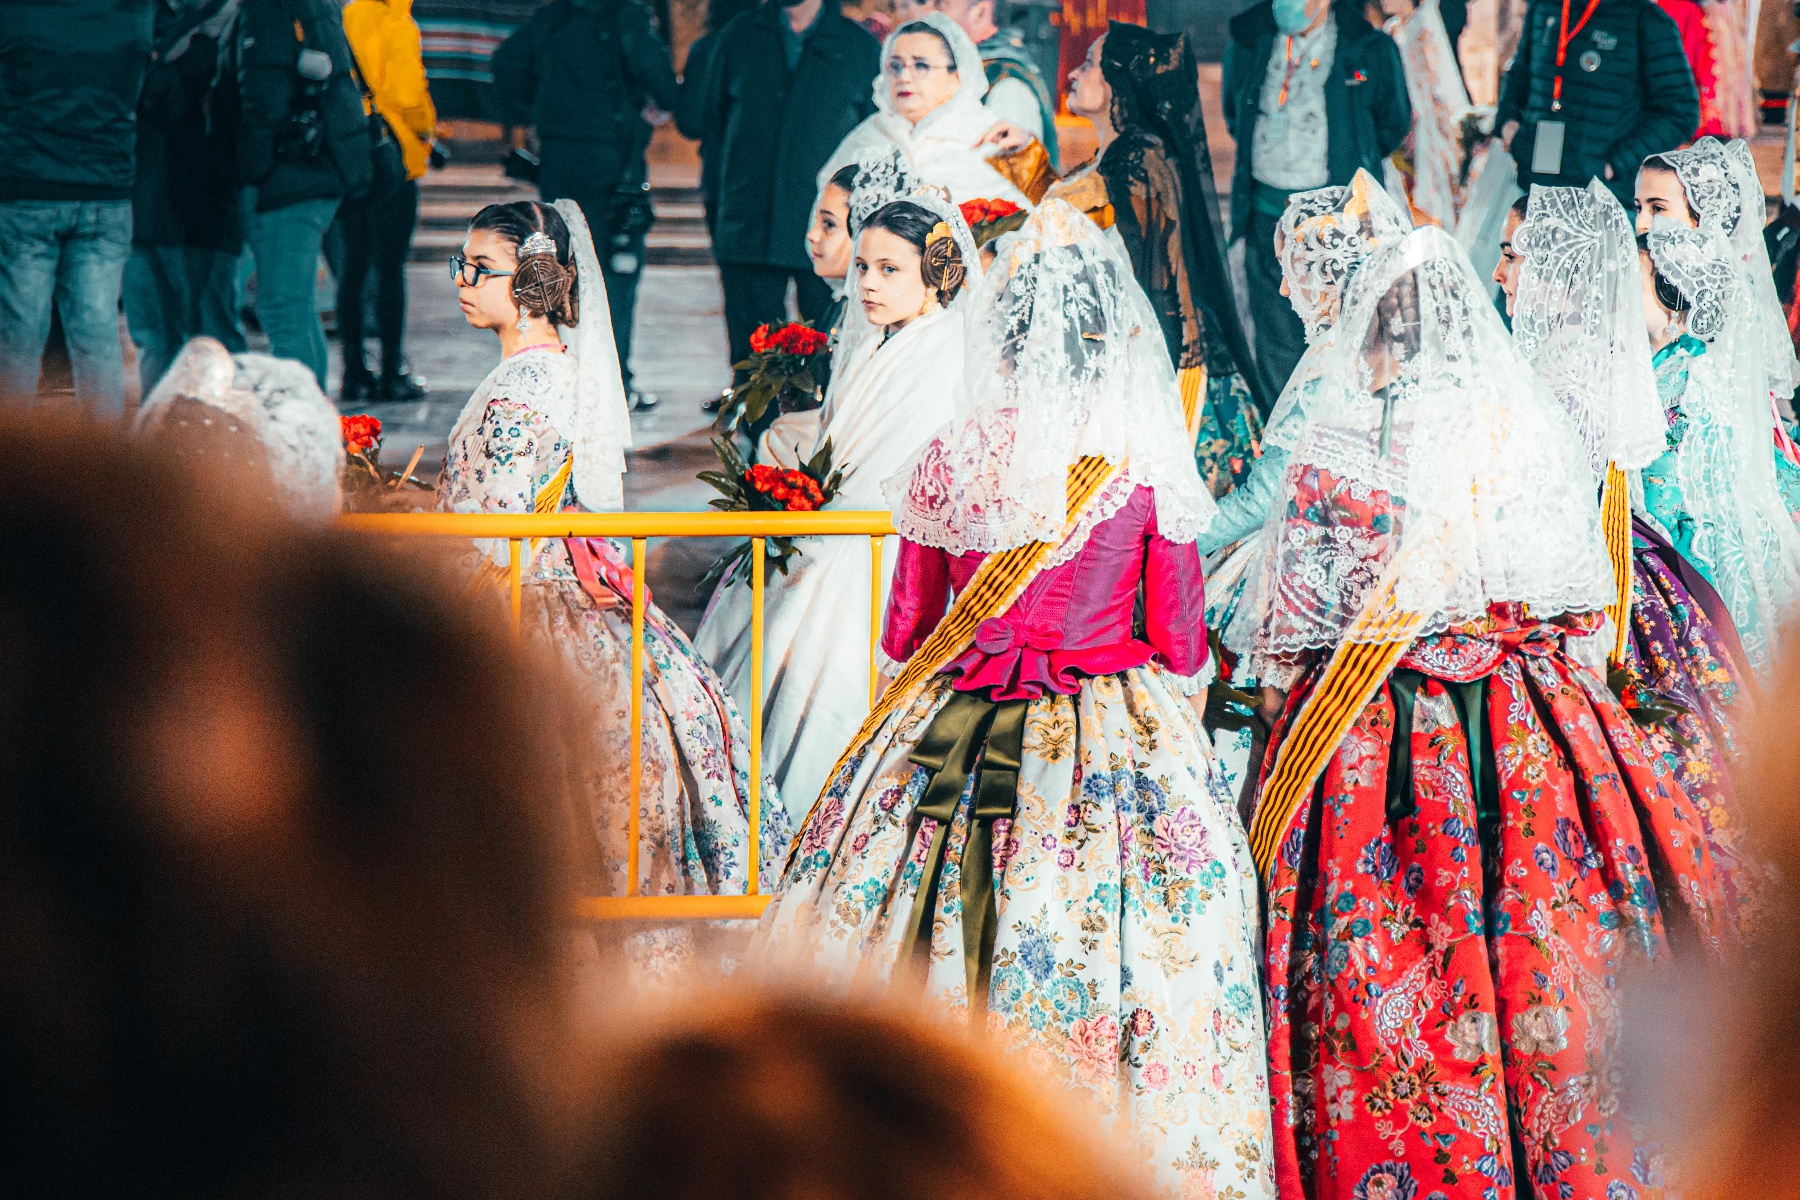 西班牙瓦伦西亚民众庆祝传统节日法雅节 迎接春天到来